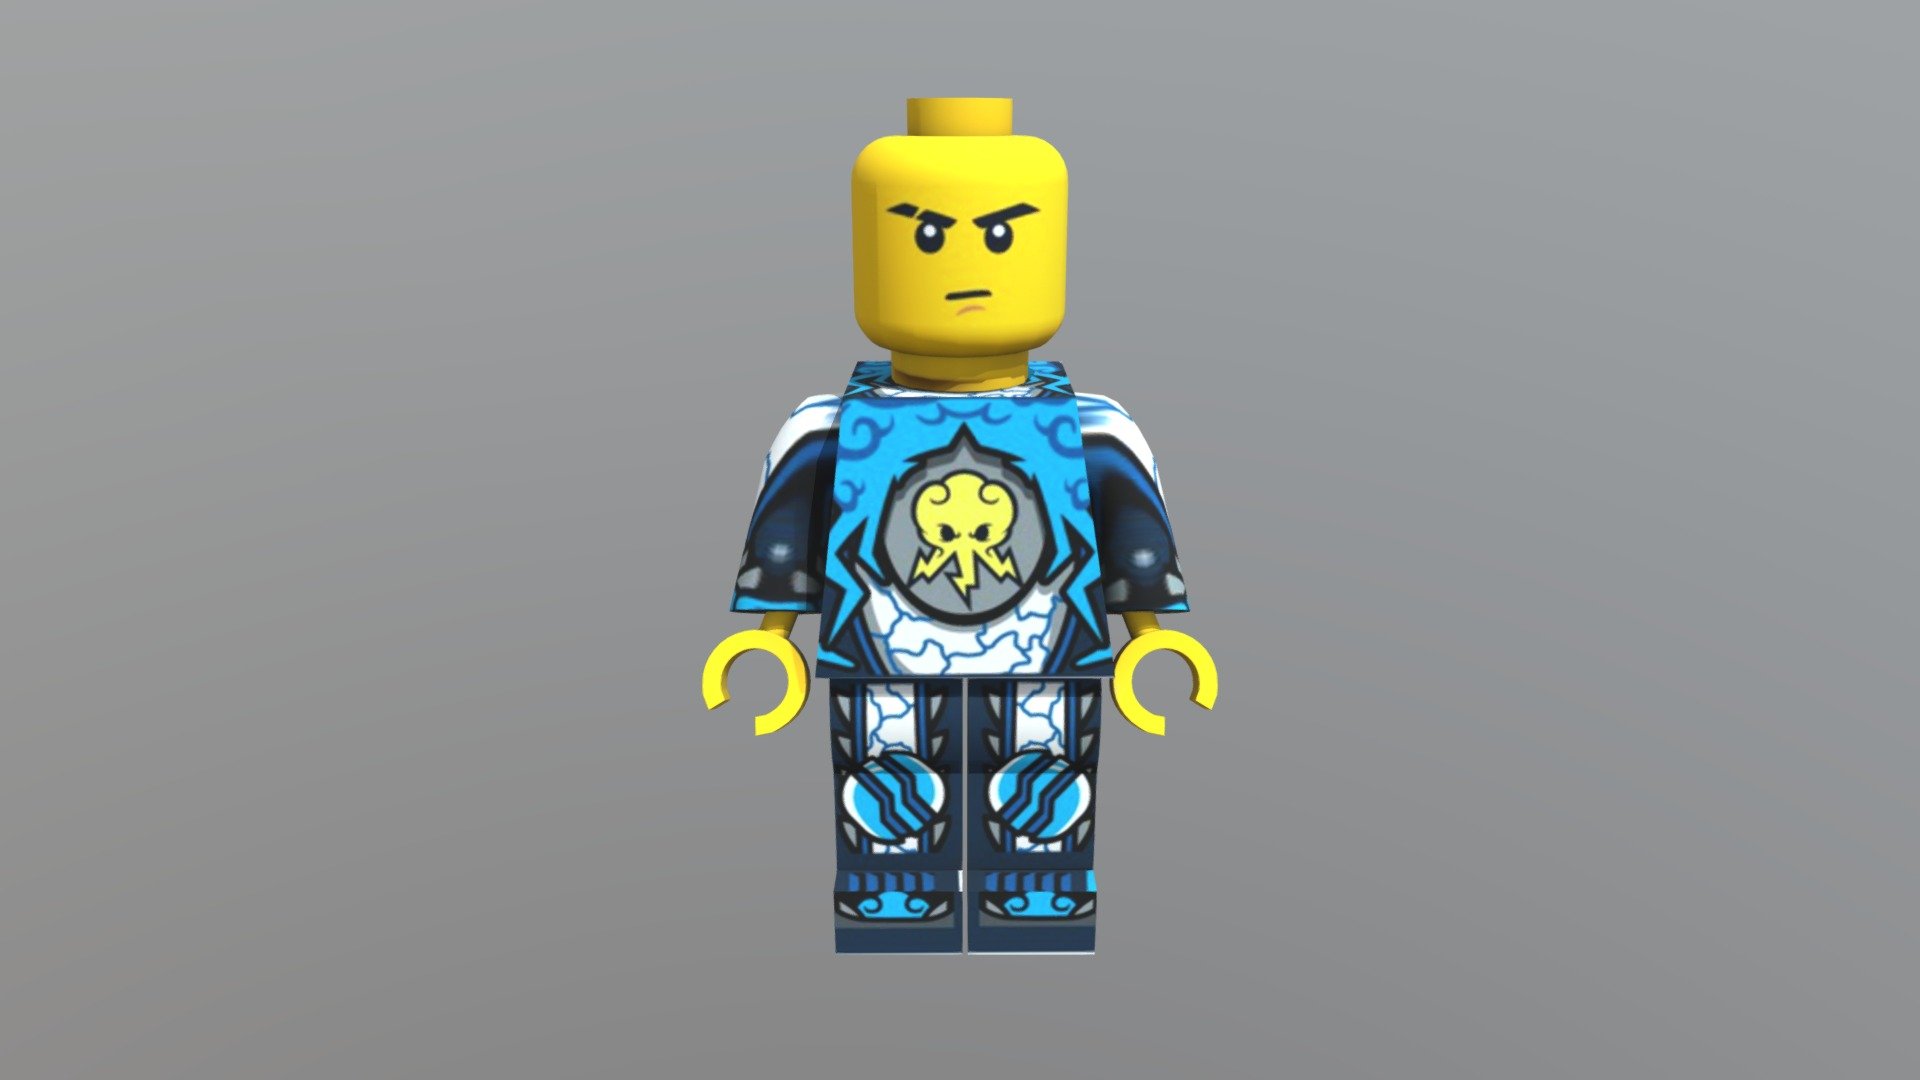 Lego ninja characters